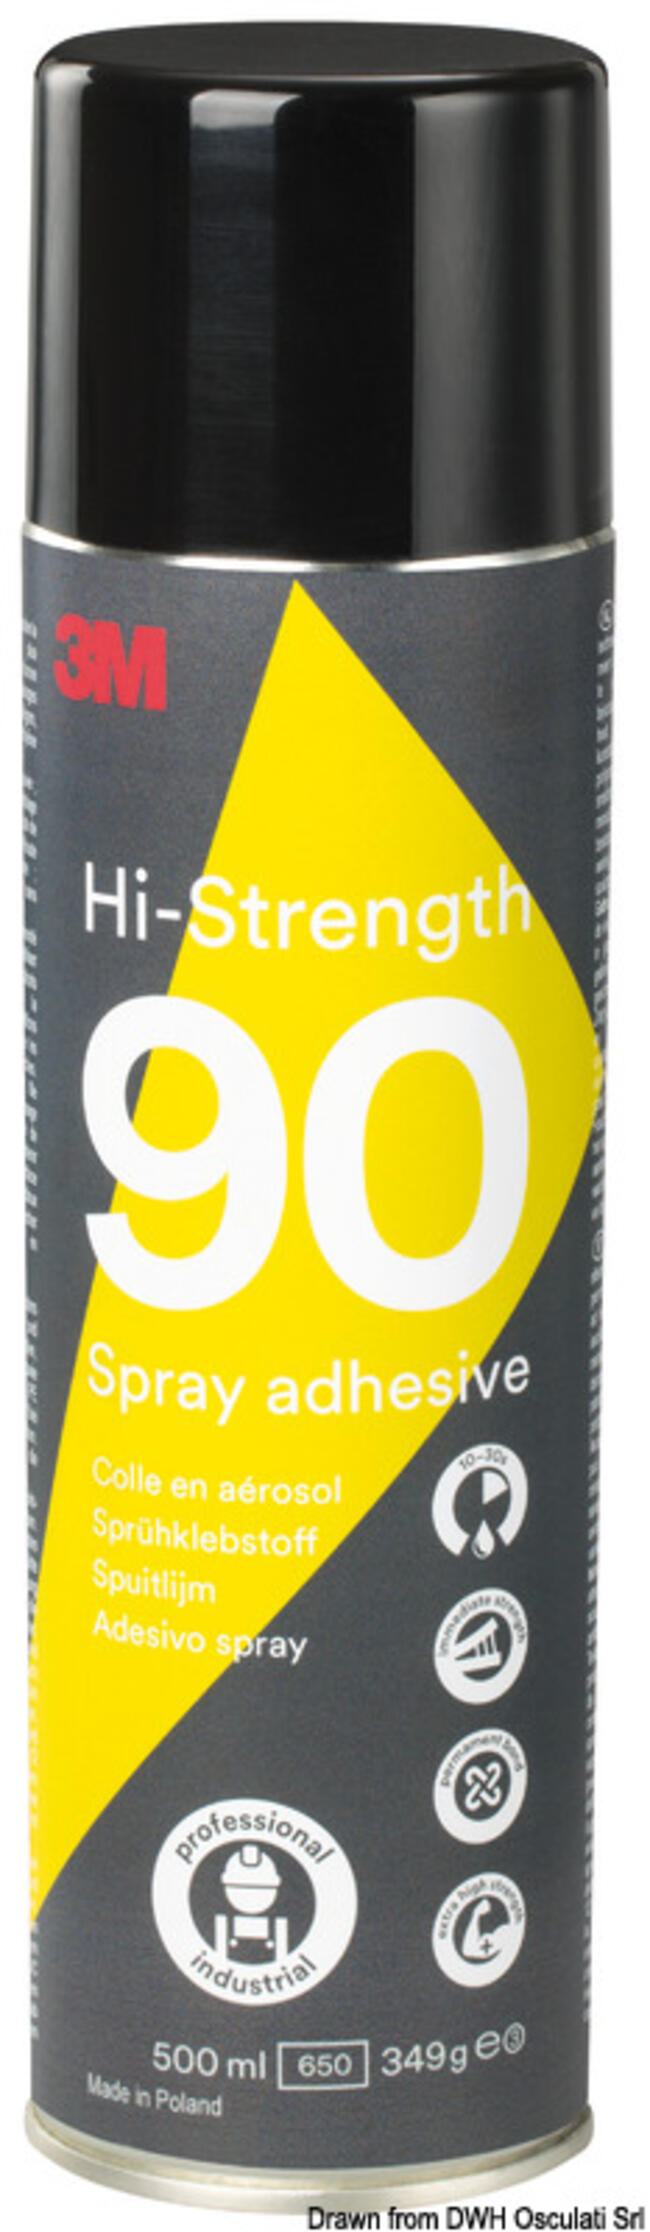 Adesivo Spray 90 3m